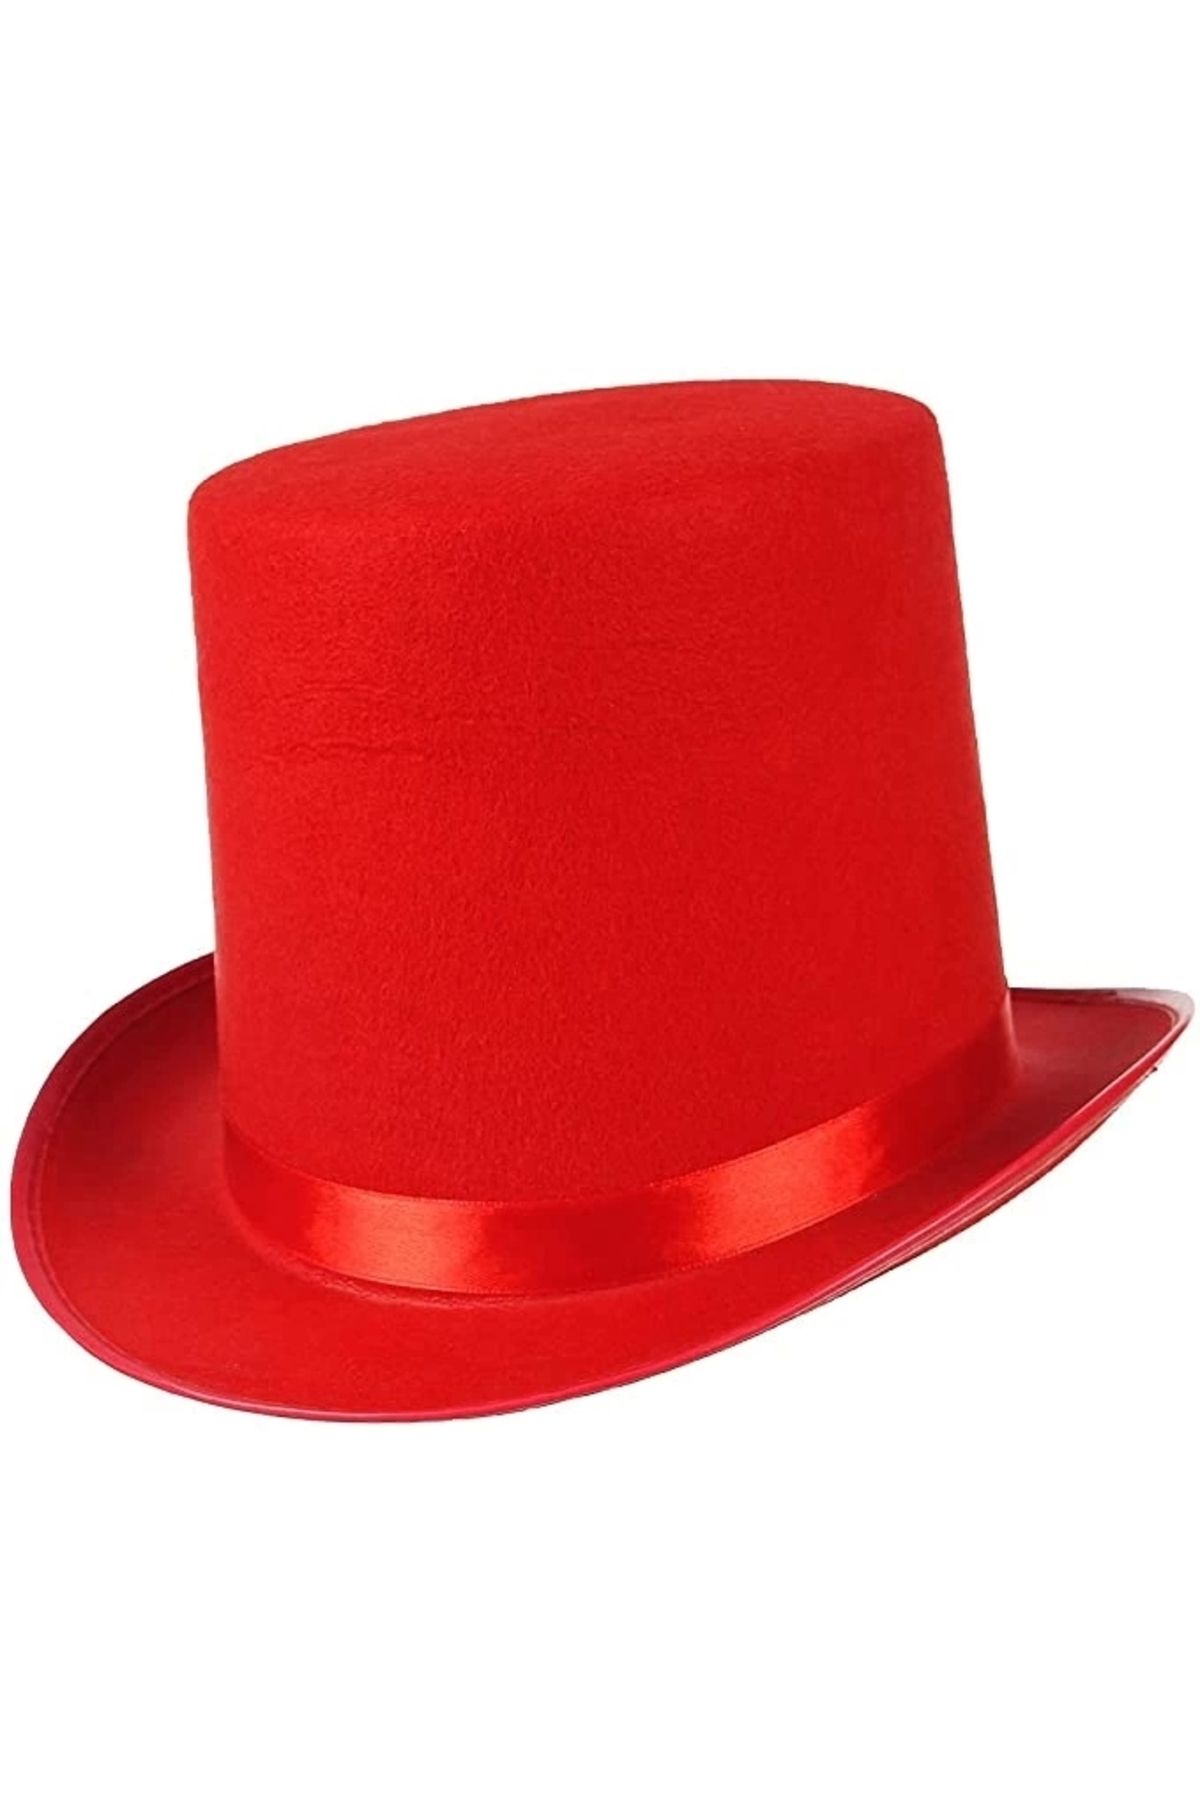 Genel Markalar Yetişkinler İçin Kırmızı Renk Ringmaster Sihirbaz Şapkası Fötr Şapka 15 cm